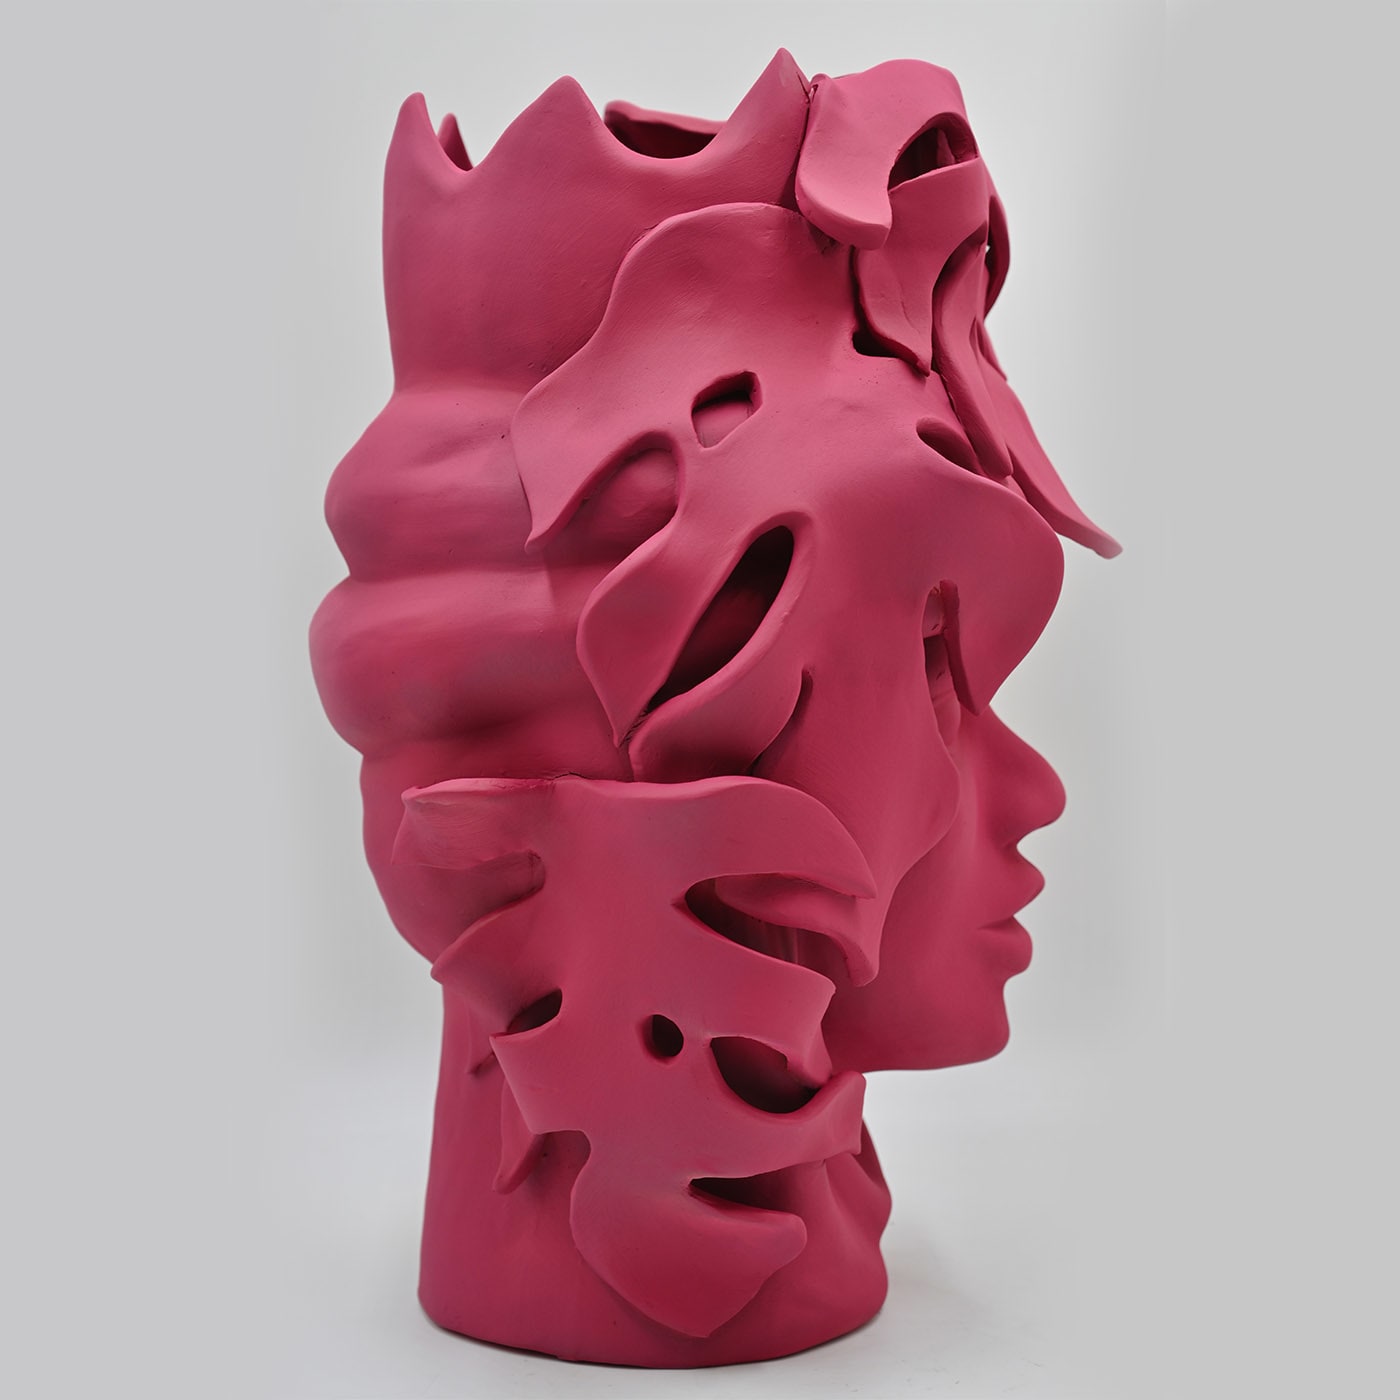 Soft Pink Moor's Head Sculpture